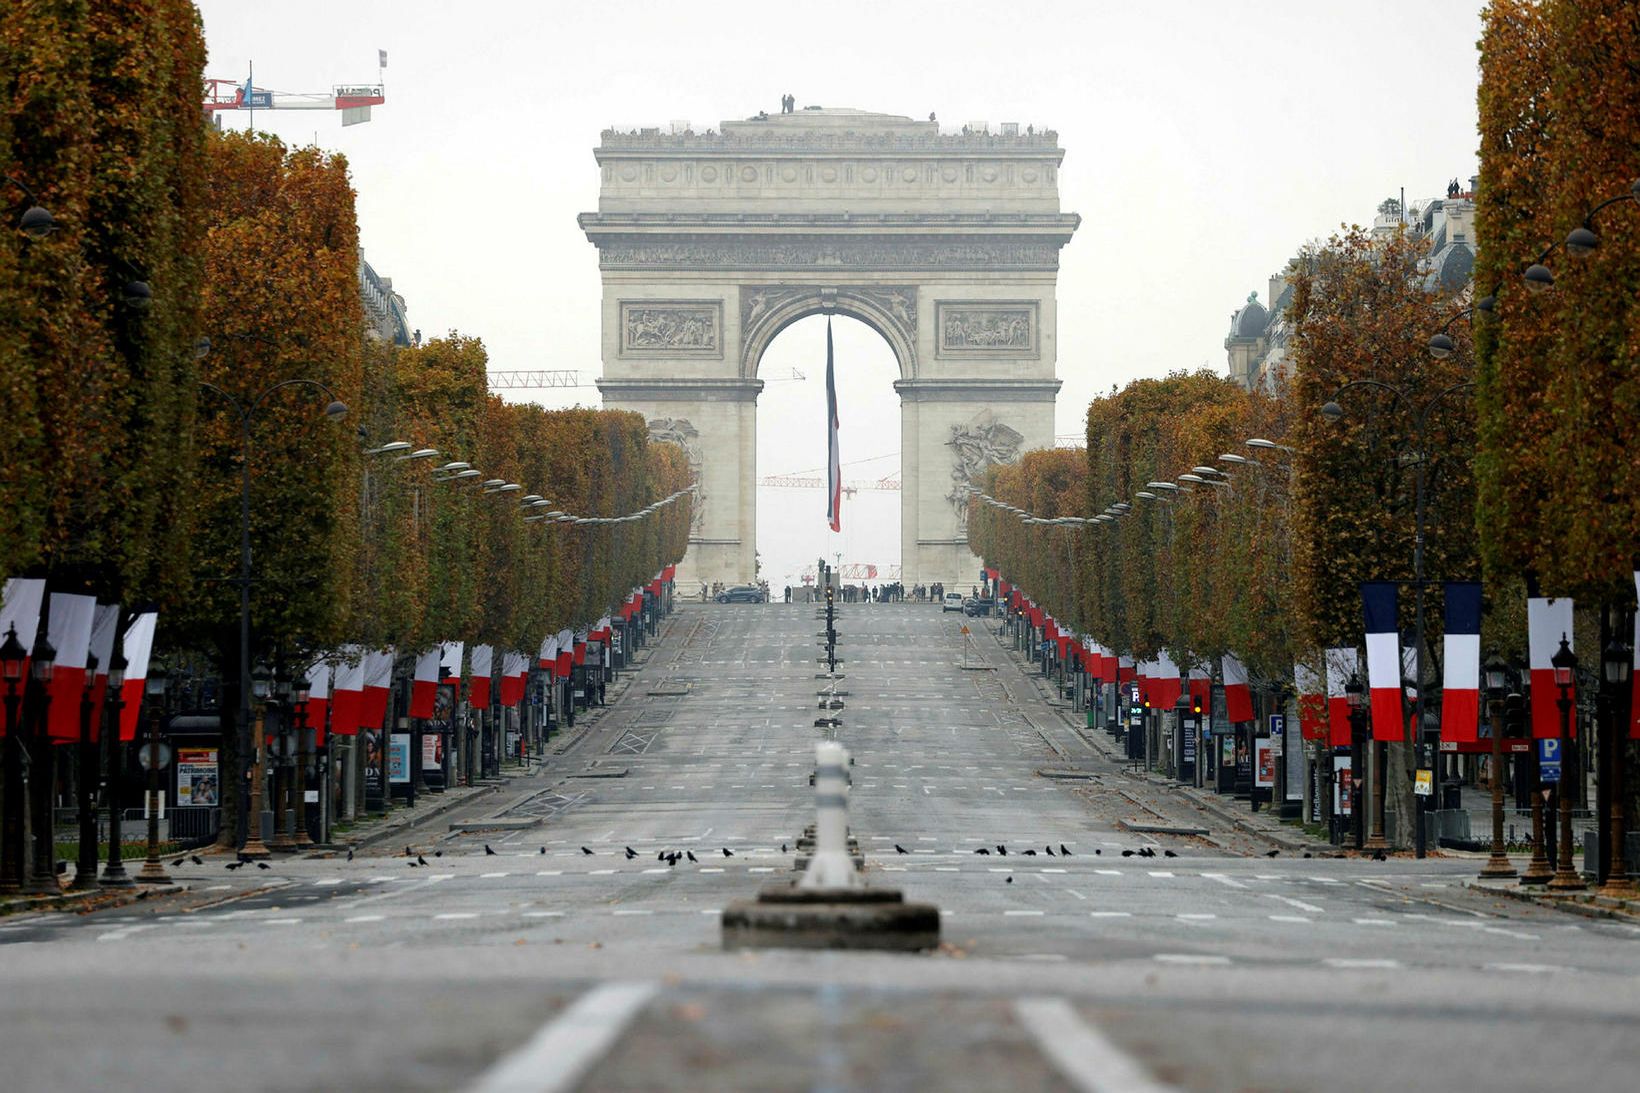 Champs-Elysees mun fá græna andlitslyfingu á næstu árum.